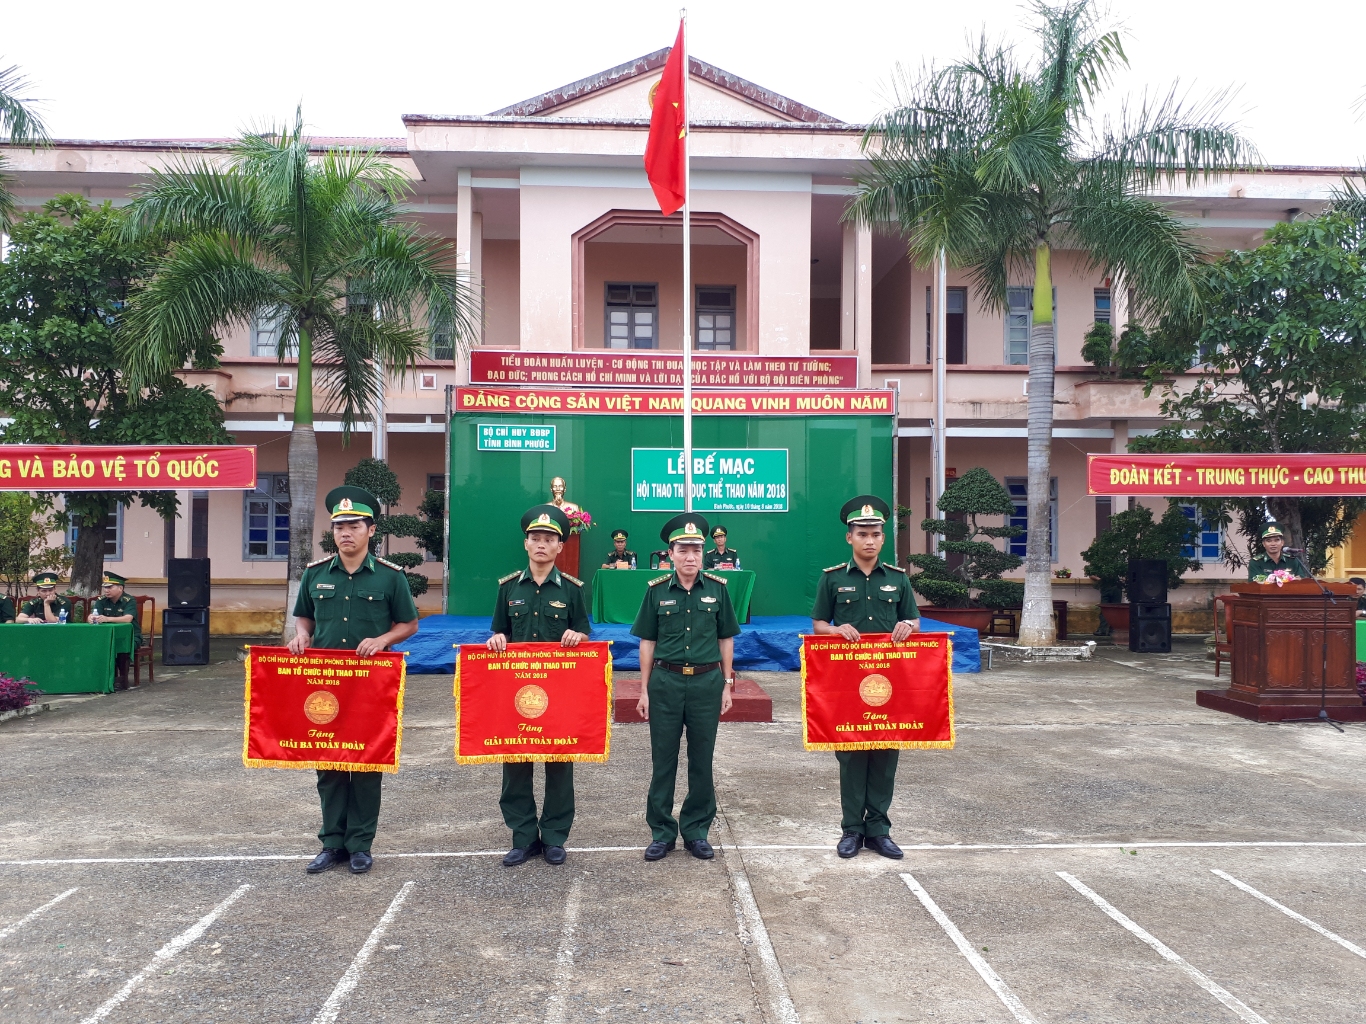 Đại tá Nguyễn Xuân Bắc, Phó chỉ huy trưởng nghiệp vụ trao giải Nhất, Nhì, Ba toàn đoàn cho các đơn vị đạt giải.